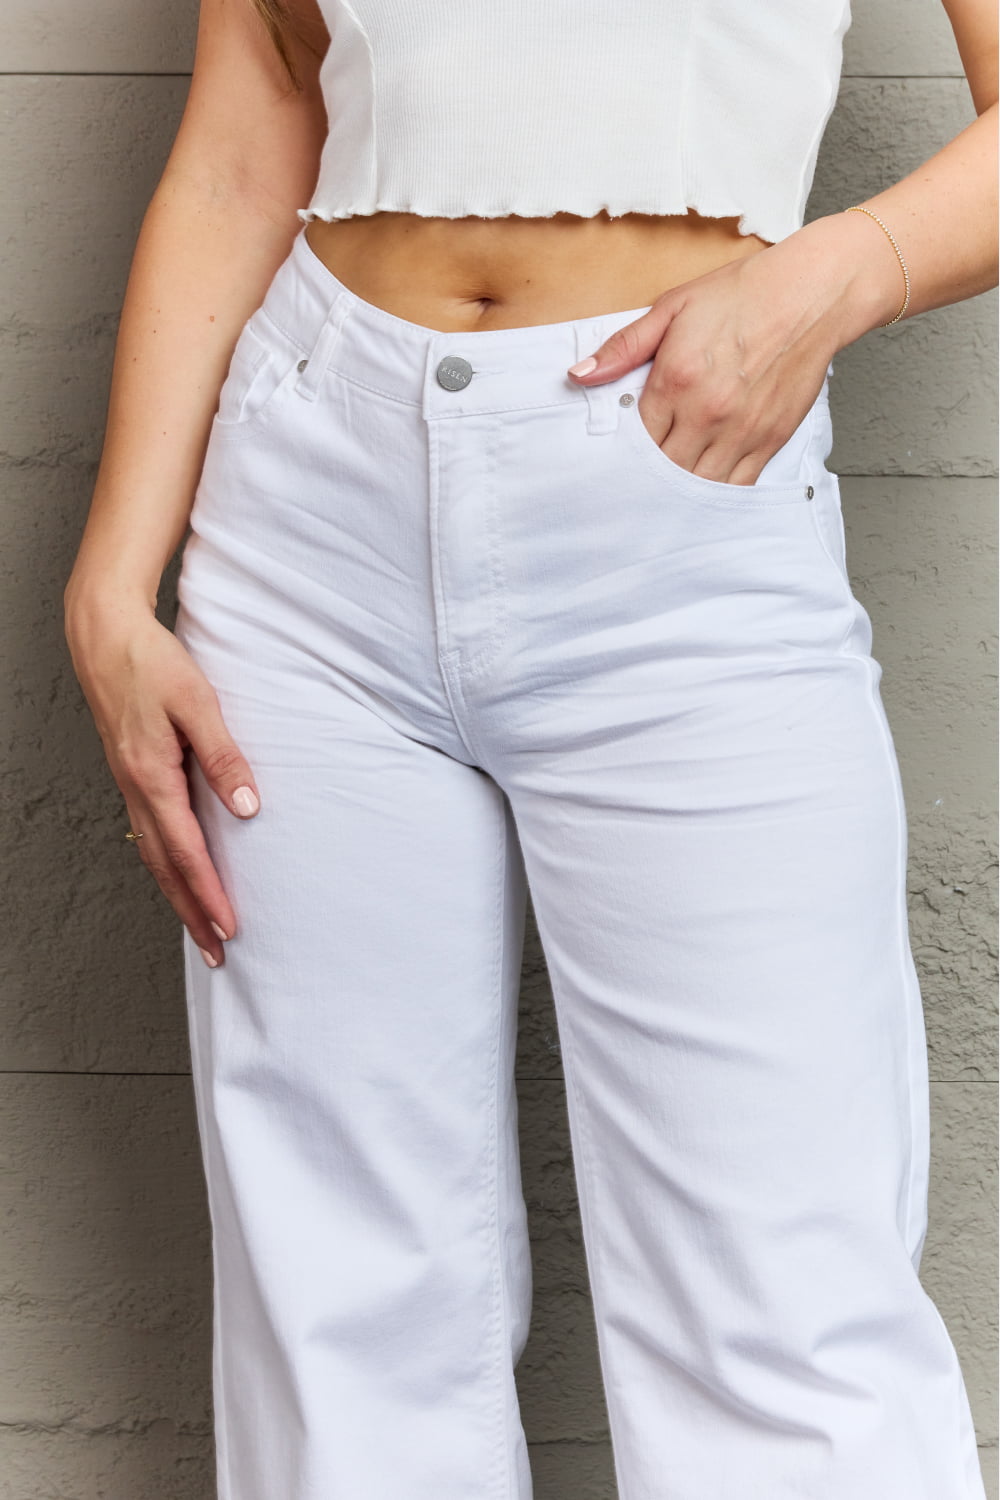 RISEN Raelene Full Size High Waist Wide Leg Jeans in White - TiffanyzKlozet